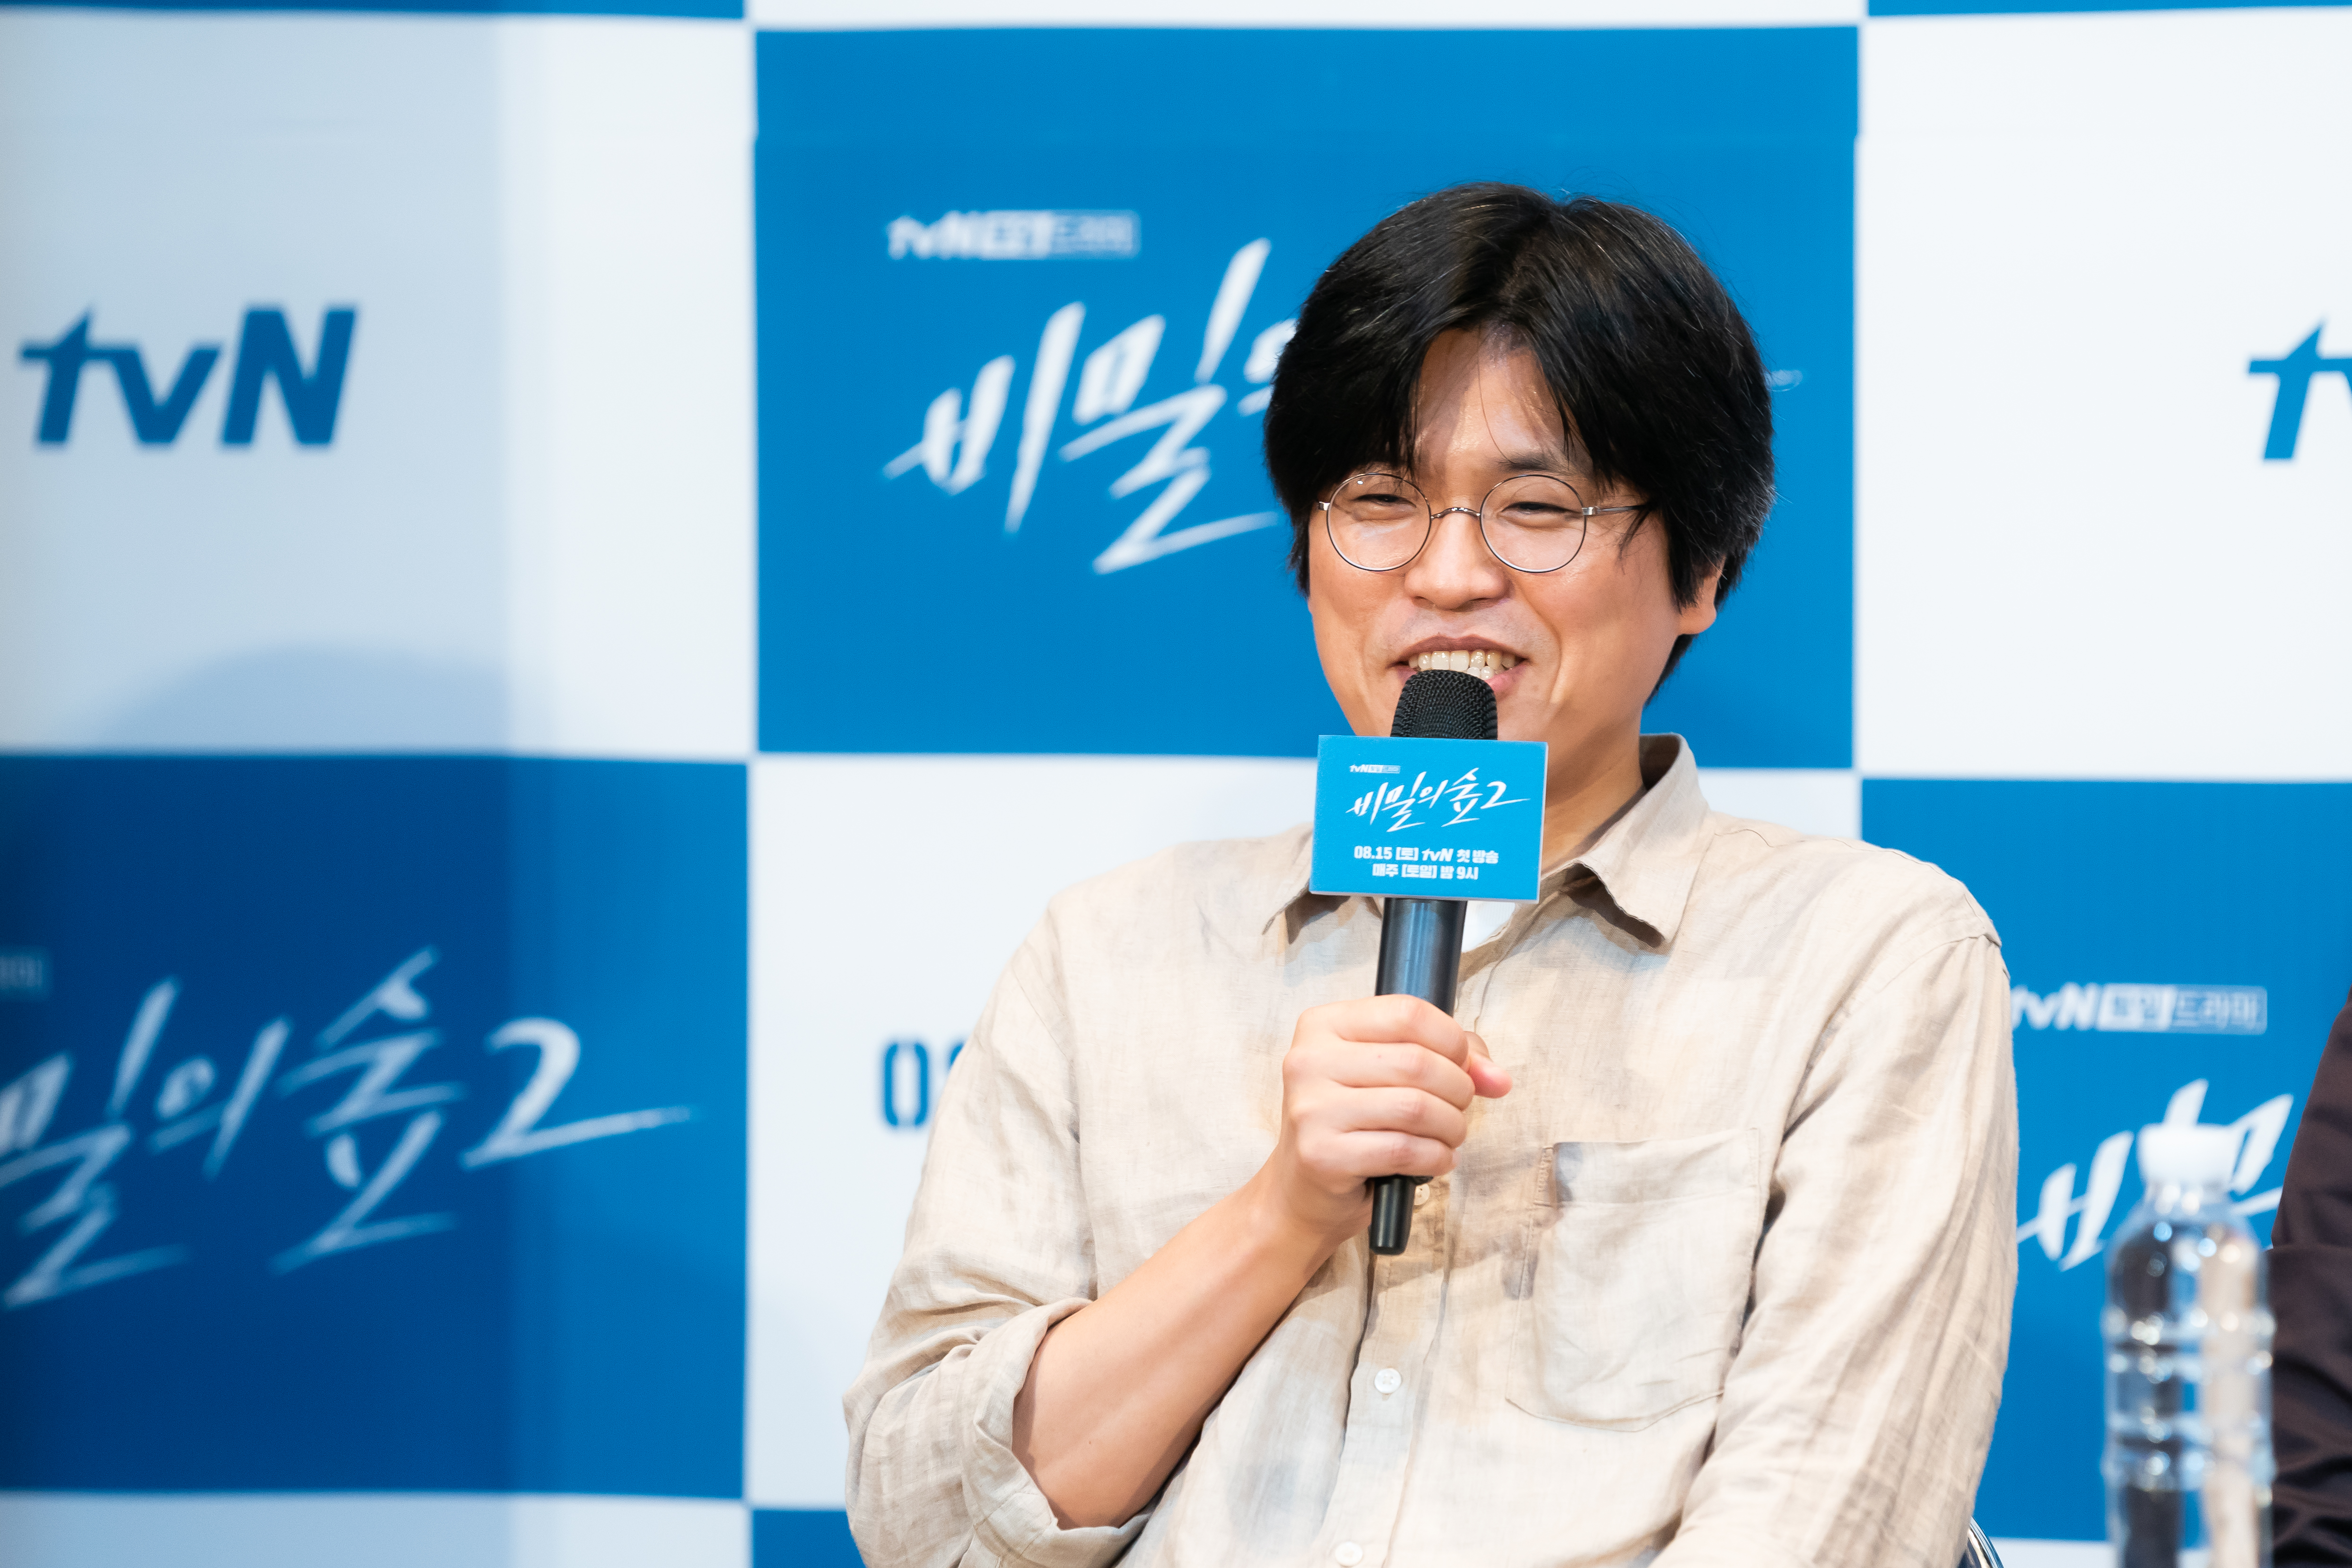 박현석 PD는 “한 명의 비숲 팬으로서 시즌3 연출 제안이 온다면 영광일 것 같다”며 “작가님이 흐른 시간만큼의 이야기를 또 담아내 주시면 새로운 길이 열리지 않을까 싶다”고 밝혔다.tvN 제공